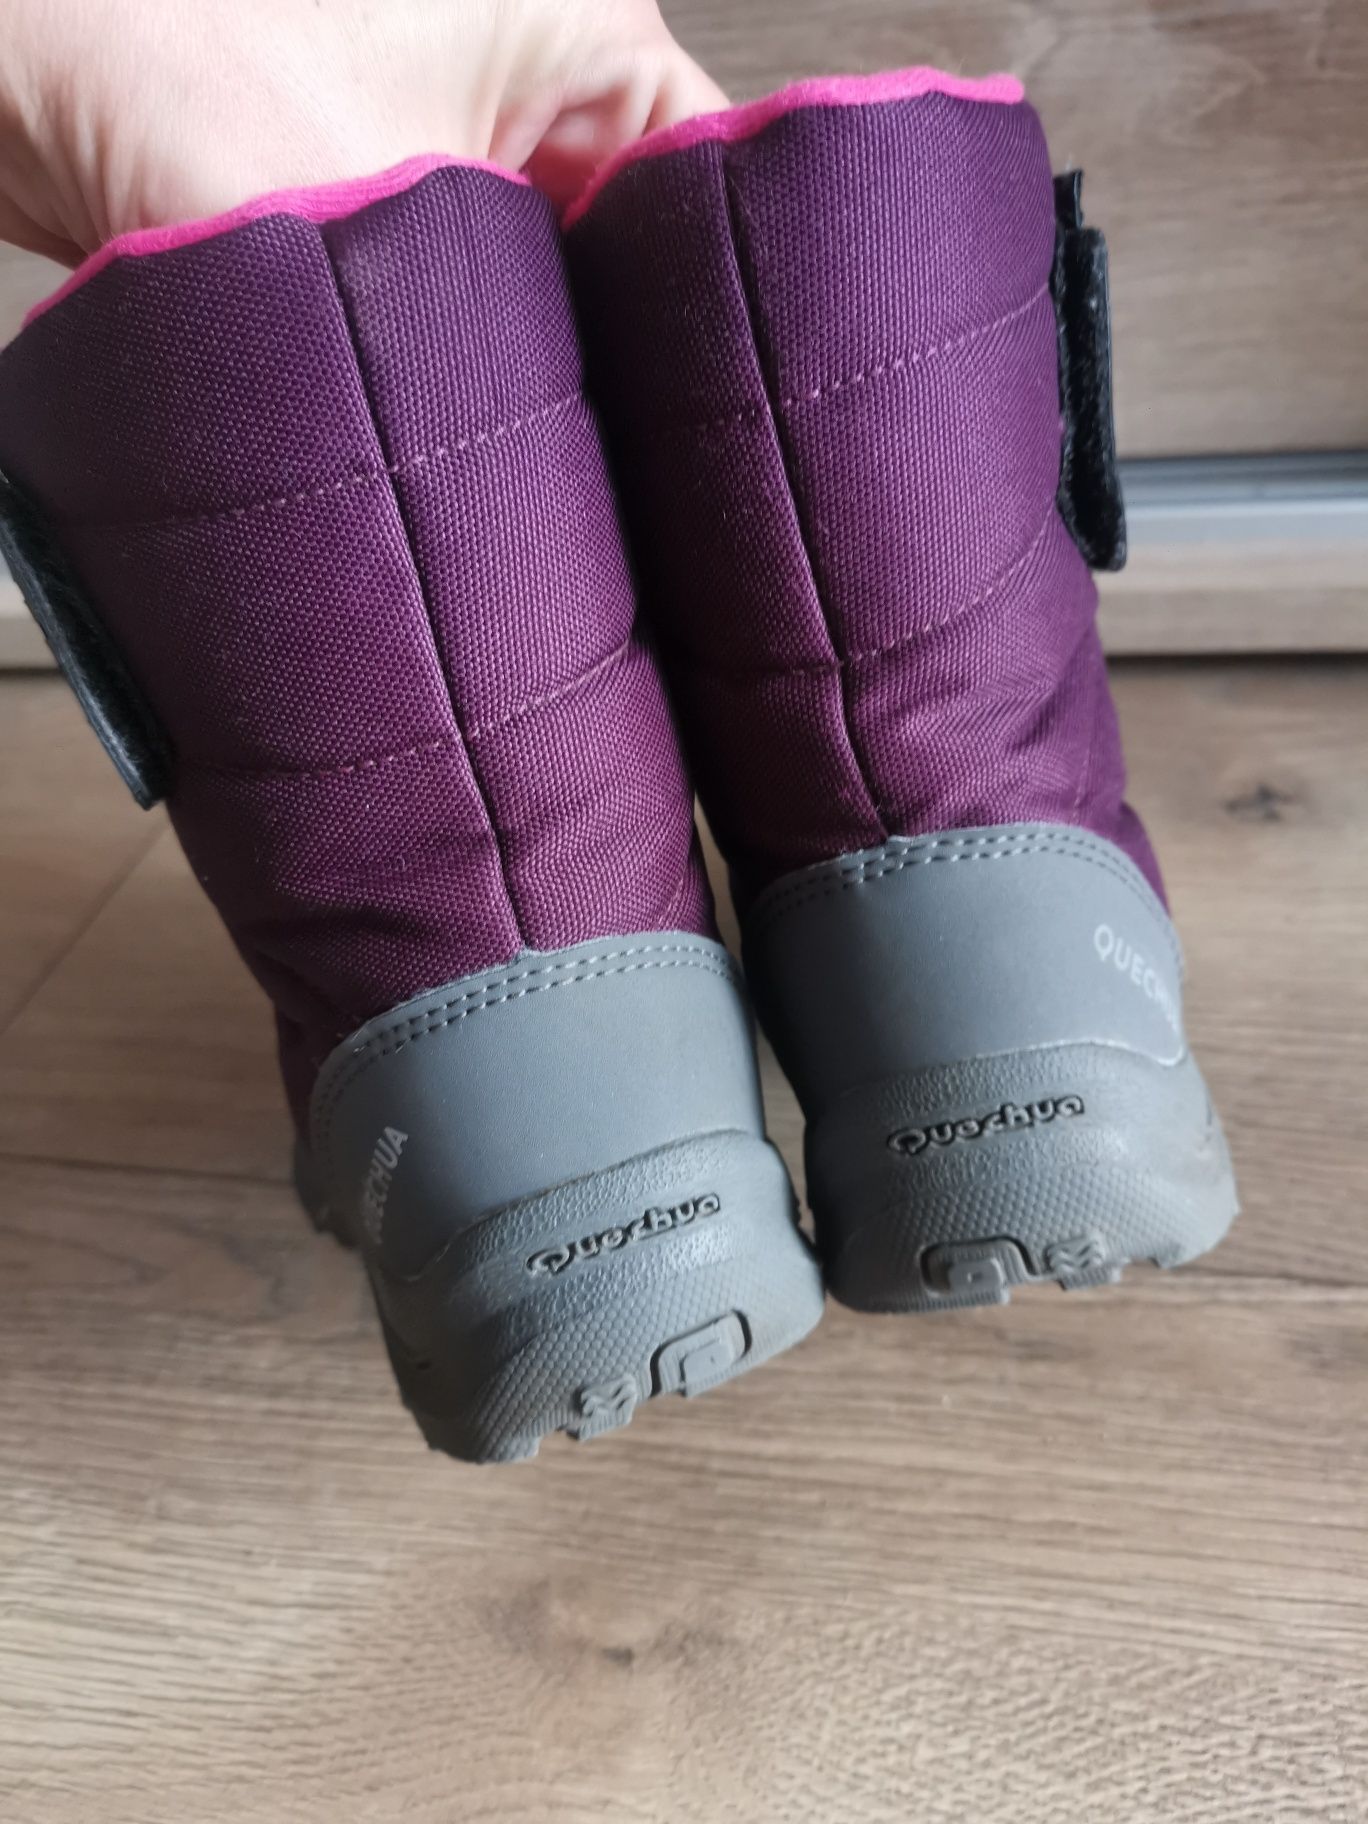 Śniegowce buty zimowe ocieplane wodoodporne Quechua r 31 Stan idealny